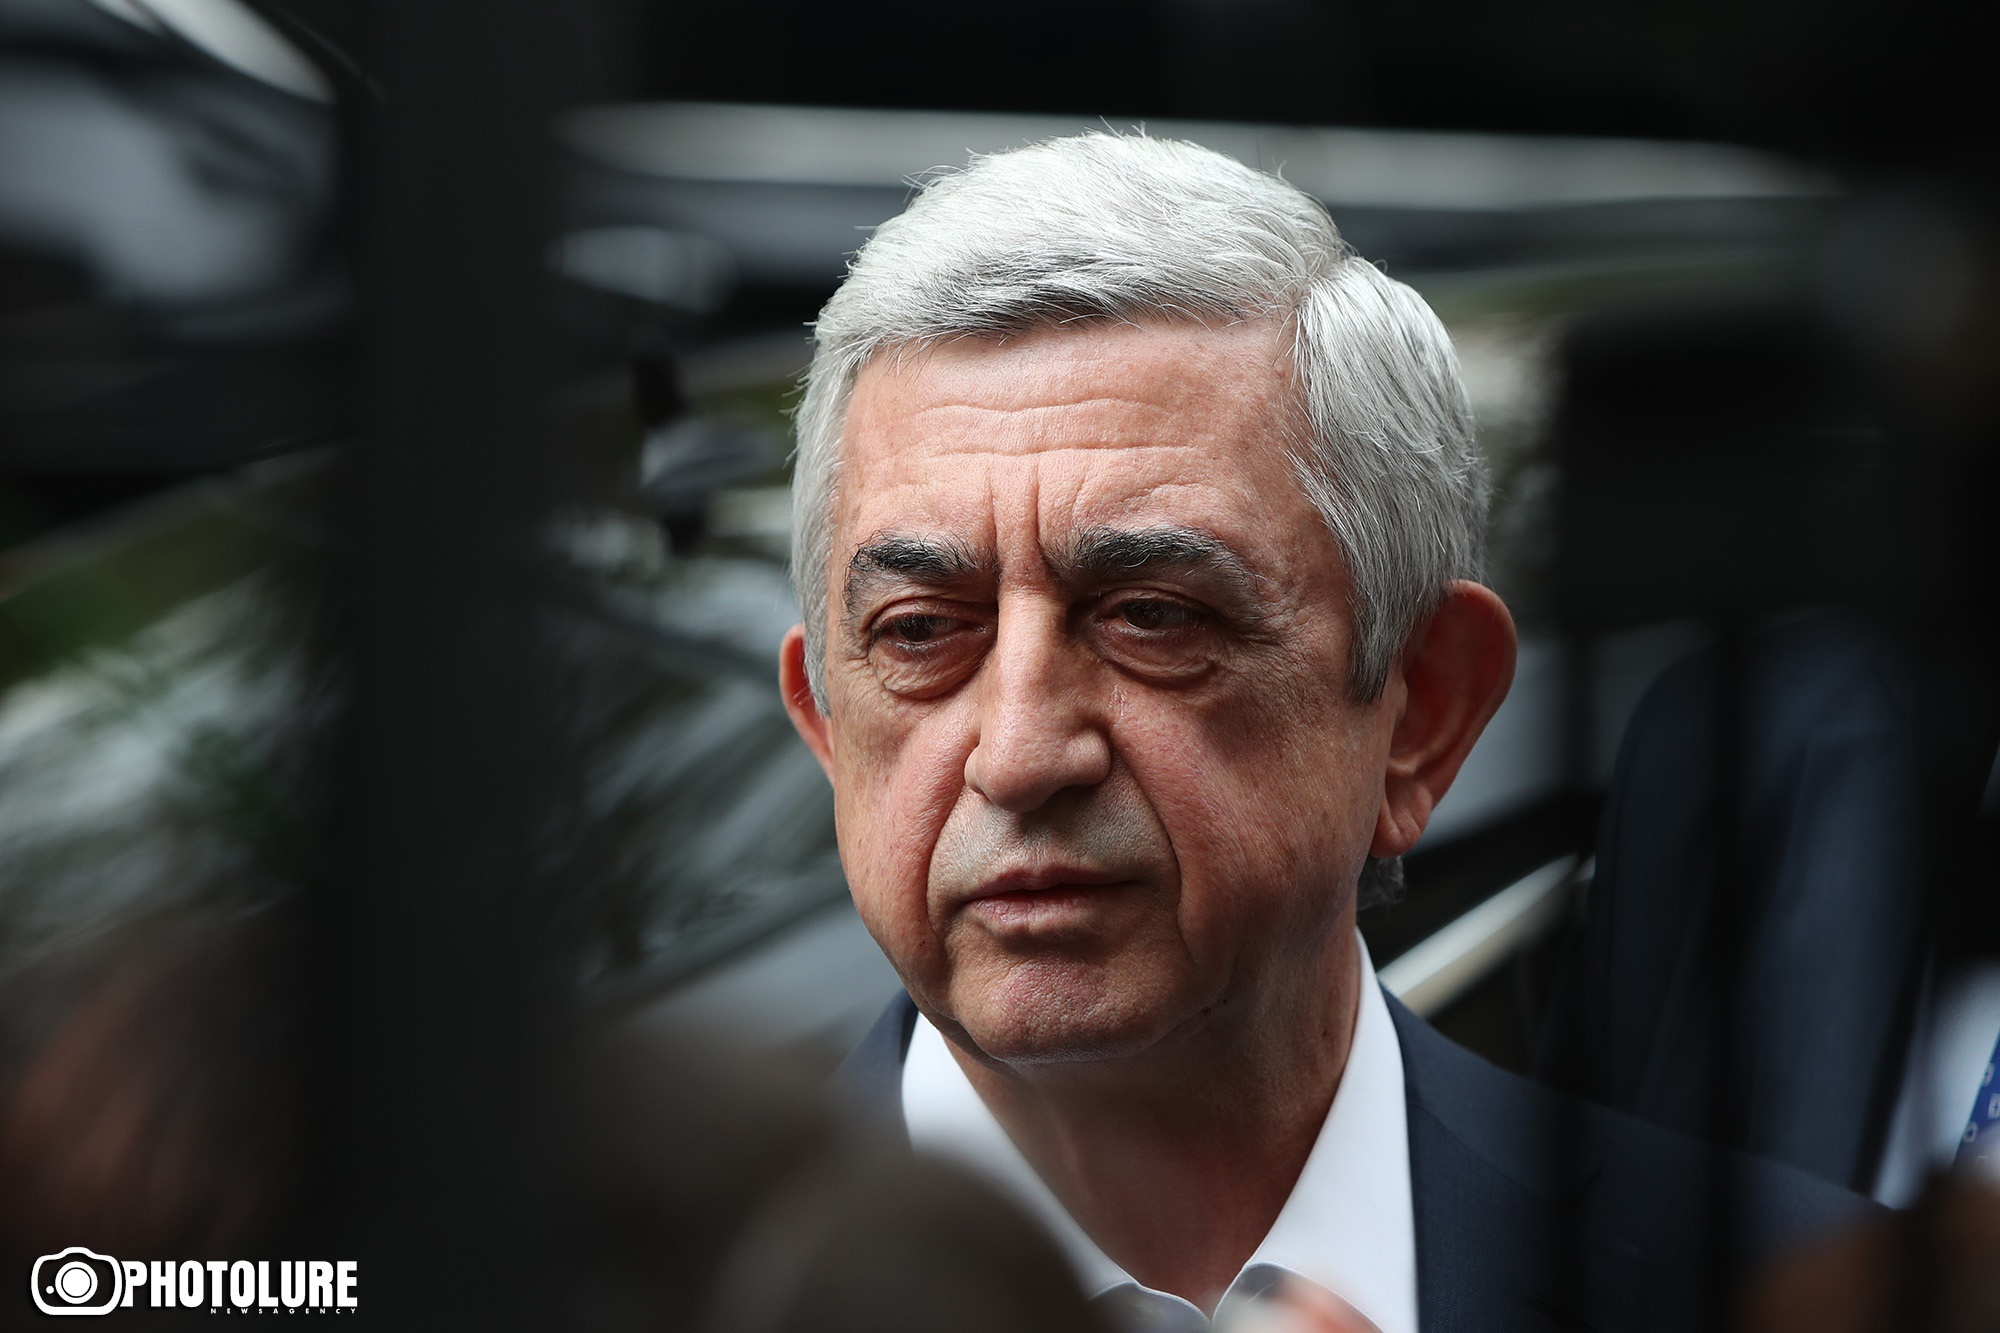 Судебное заседание по делу третьего президента Армении Сержа Саргсяна отложено